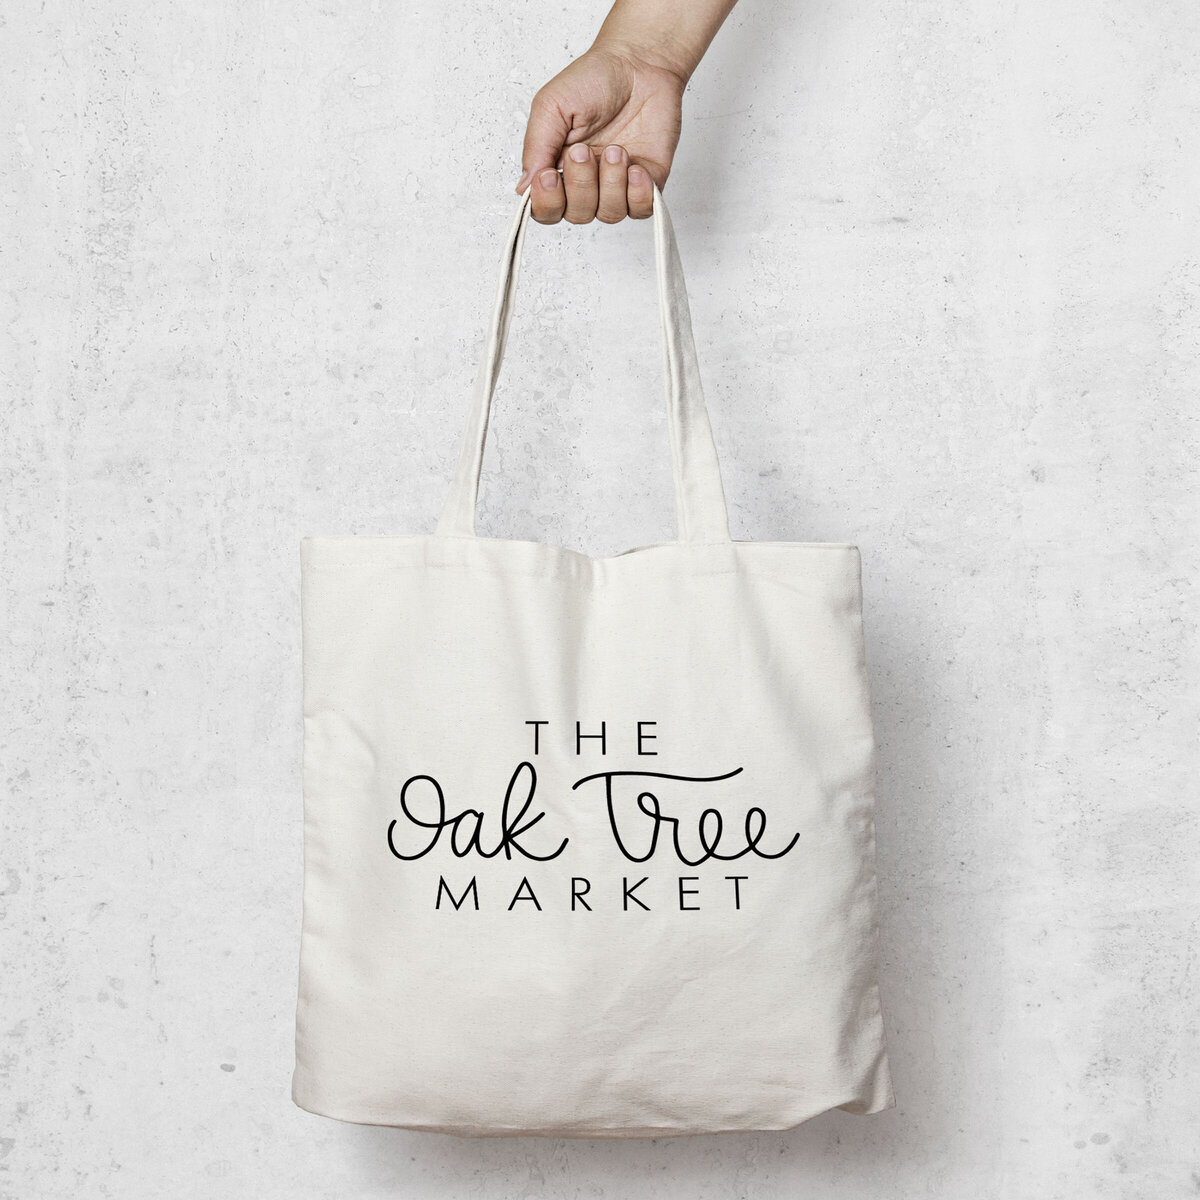 market bag in Buffalo New York designed by Nancy Ingersoll